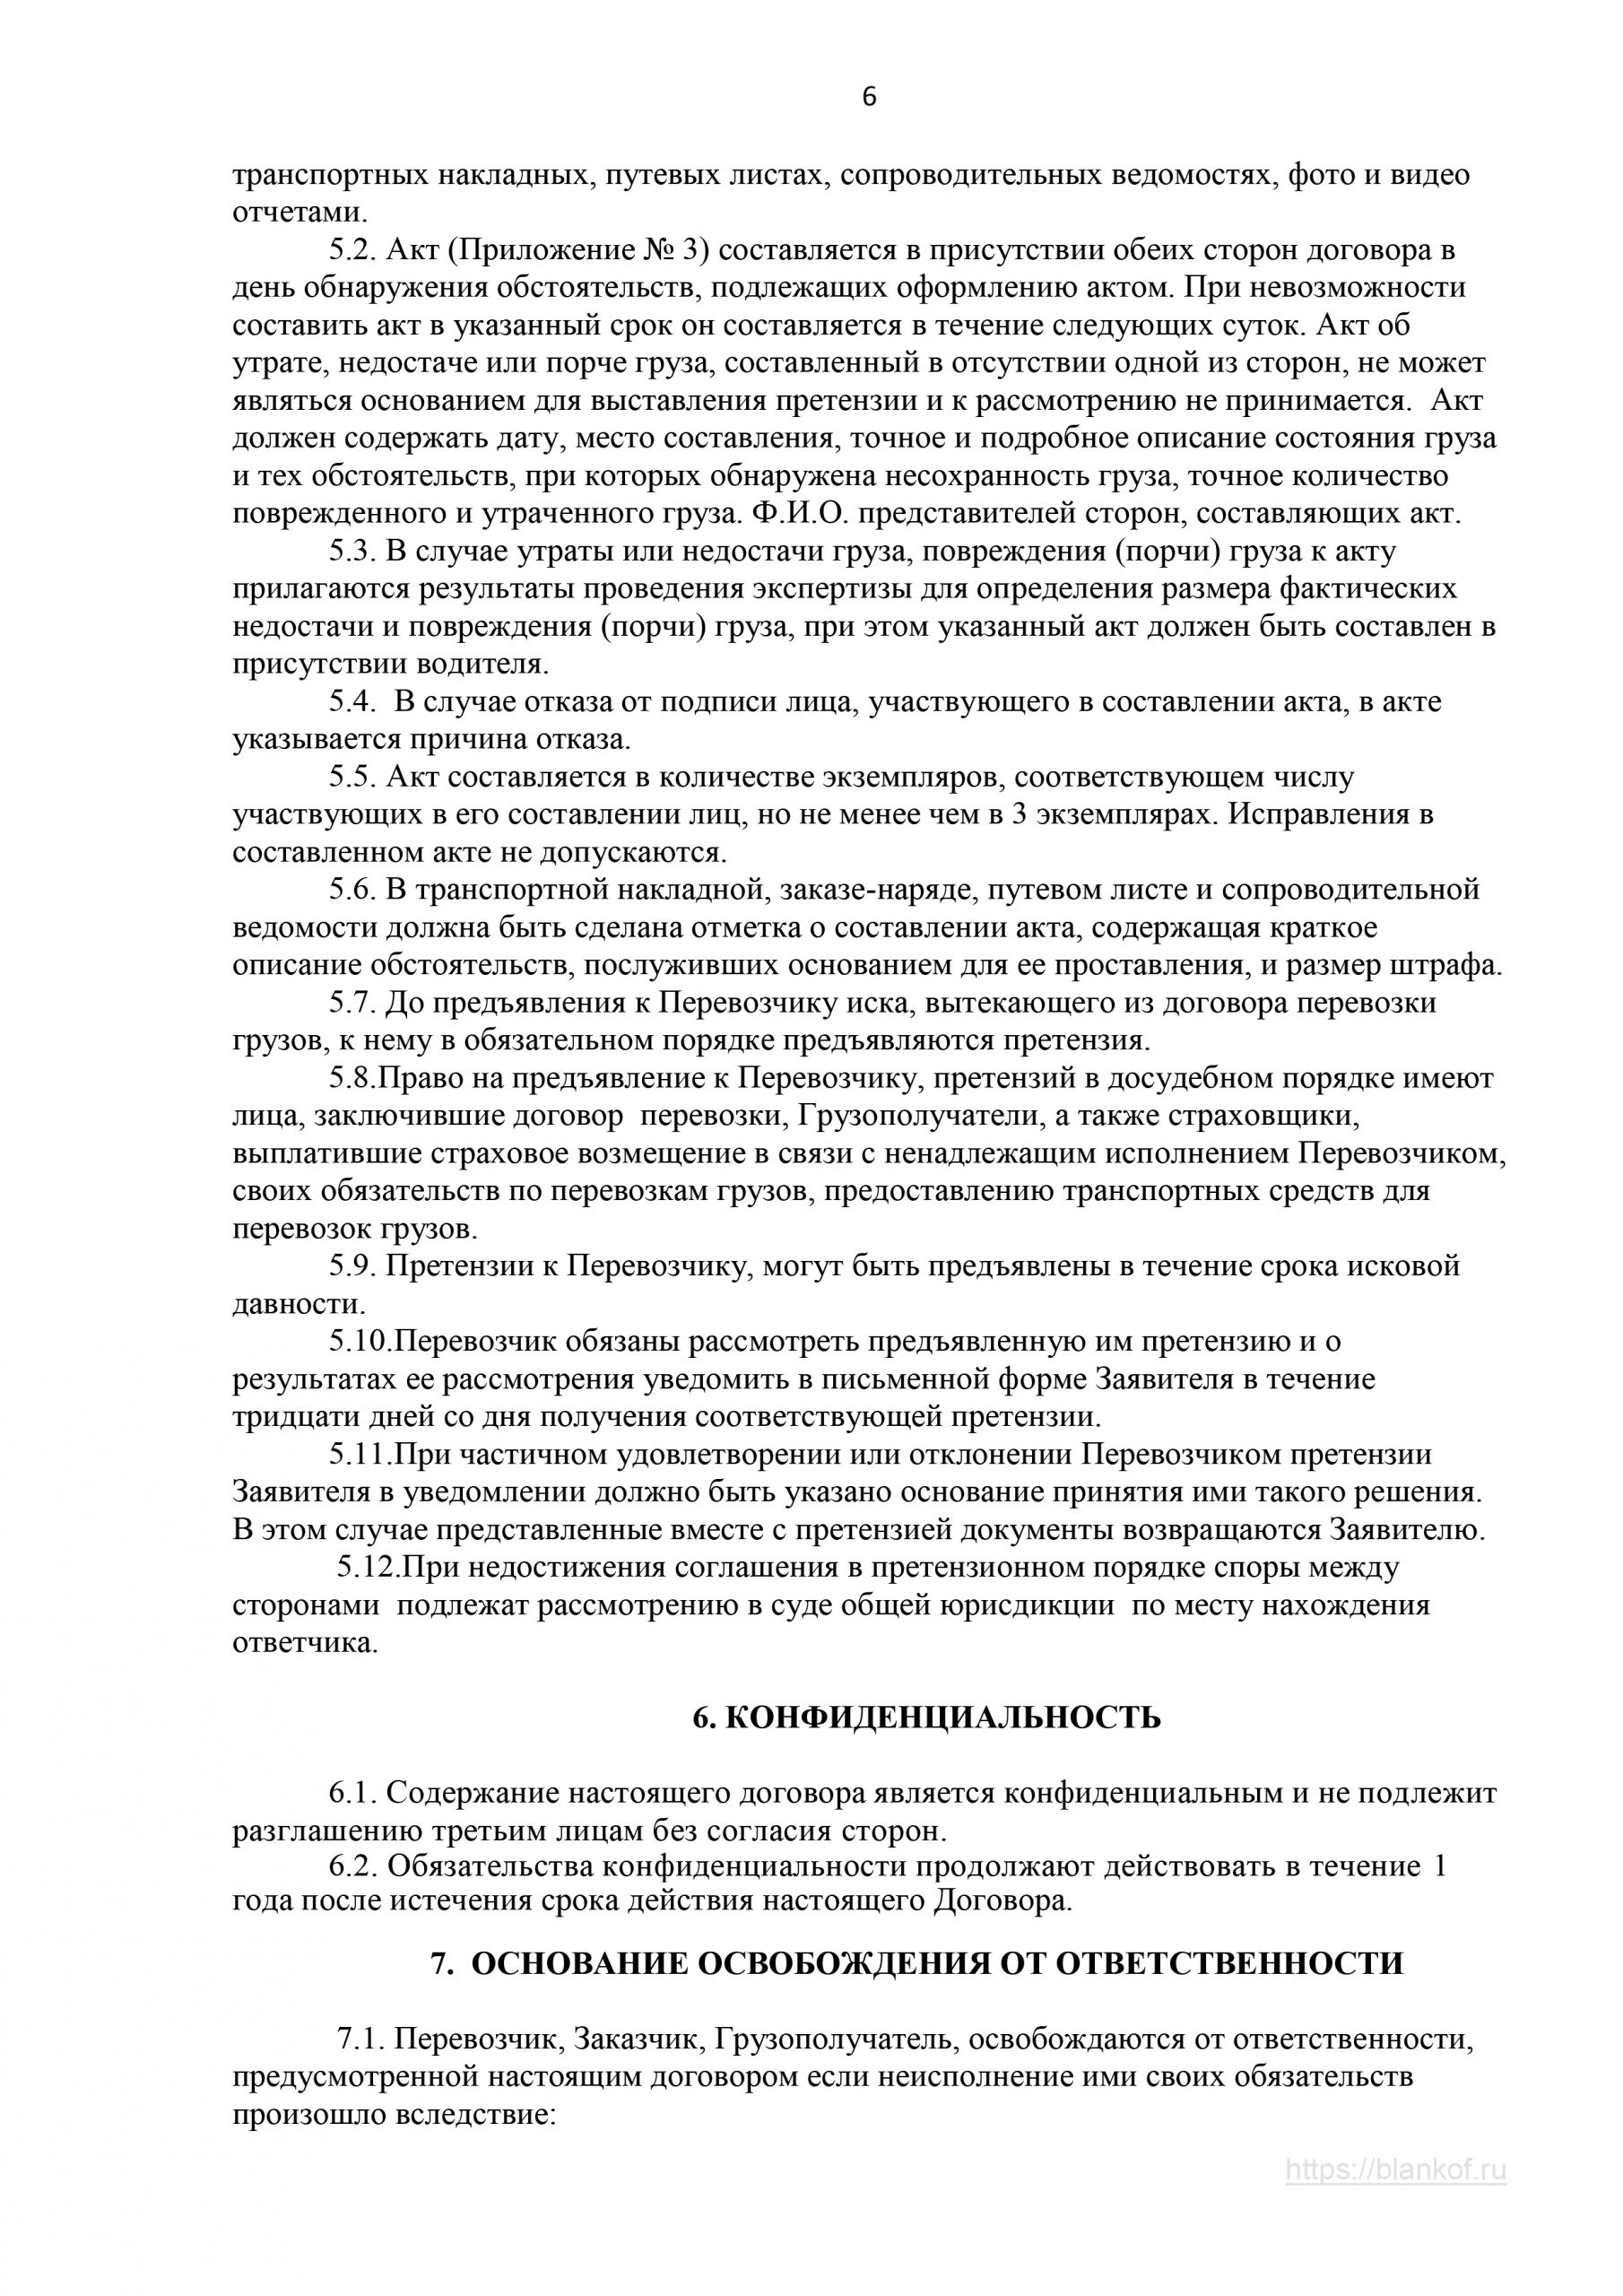 договор грузоперевозки образец Комсомольск на Амуре